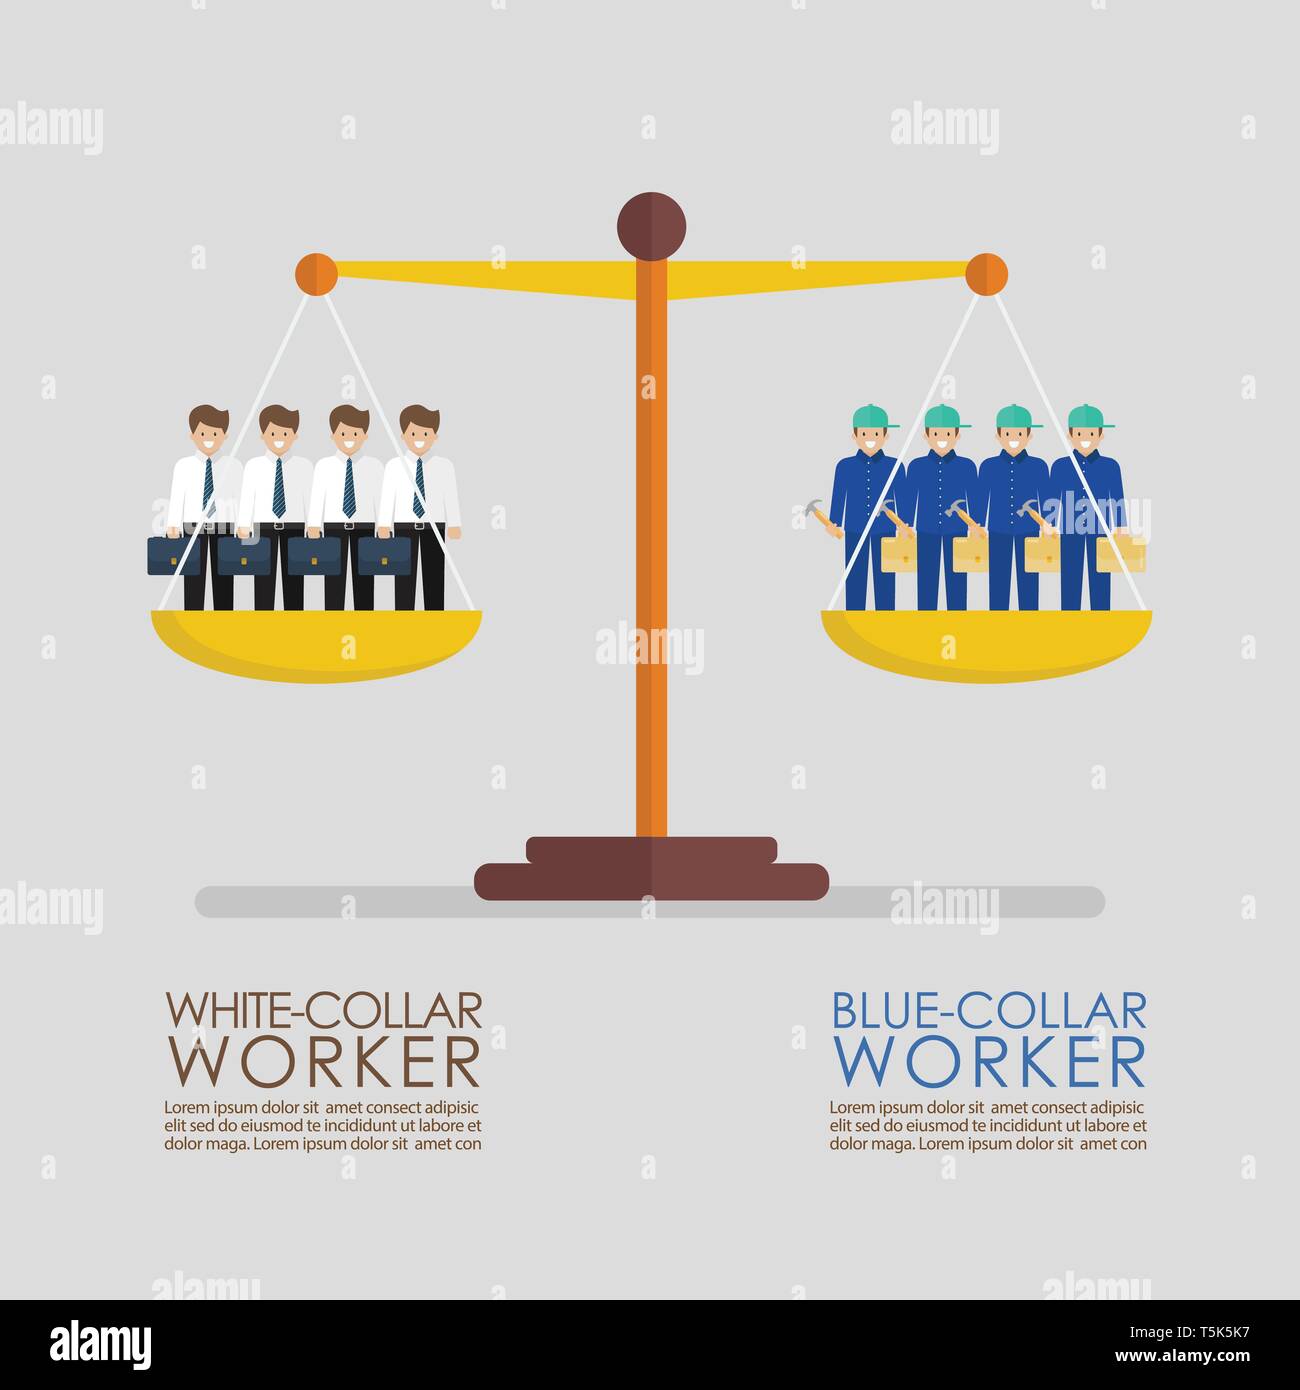 Comparación entre trabajadores de cuello blanco y azul sobre balanza infográfico. Concepto Busiess Ilustración del Vector